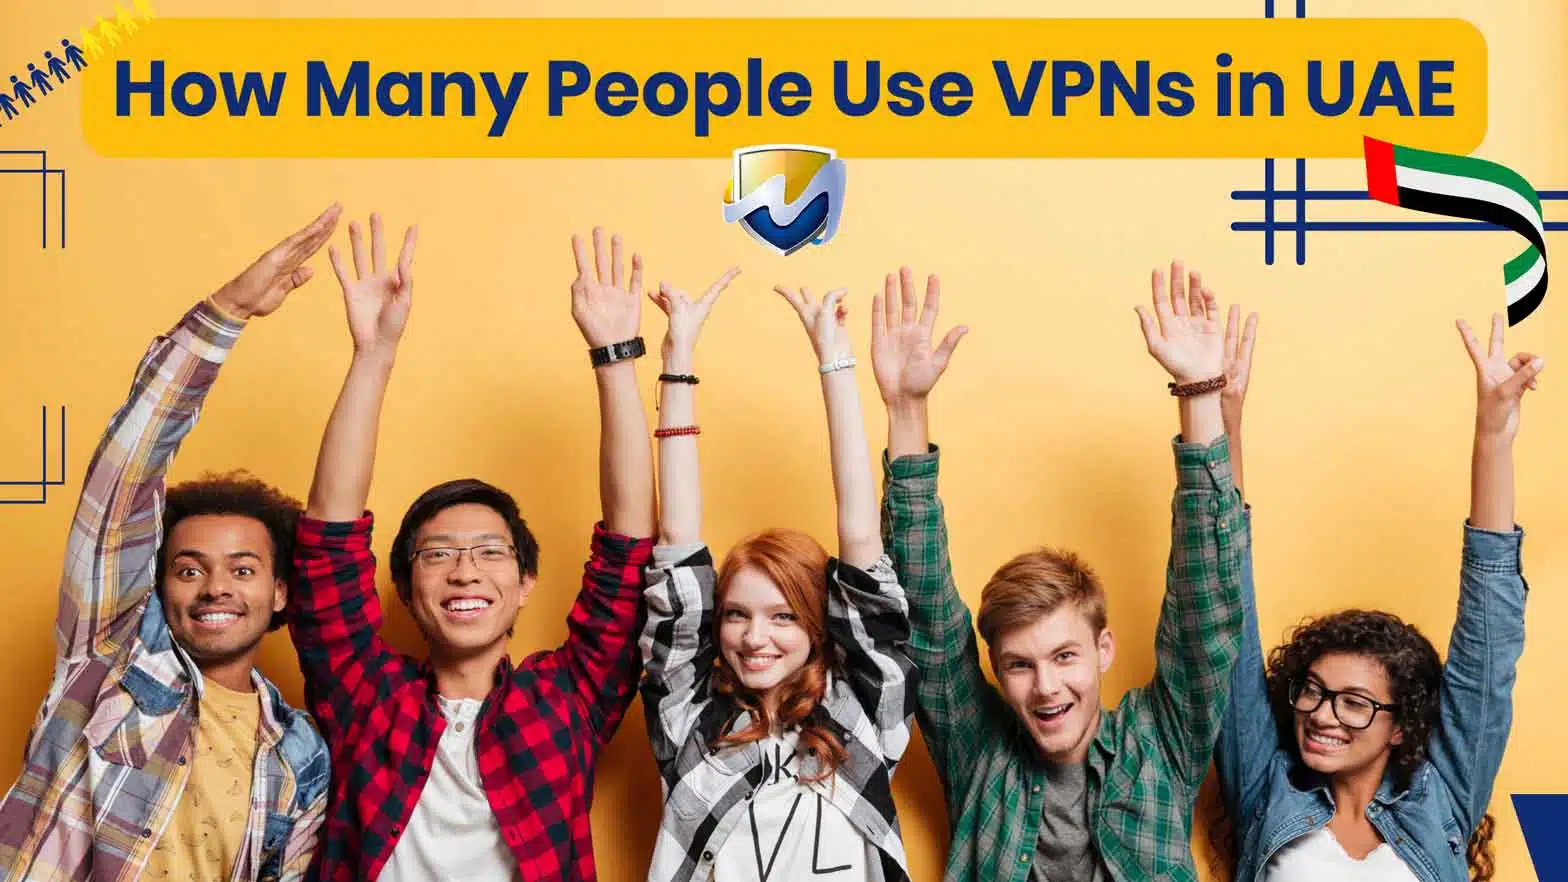 VPNs in UAE